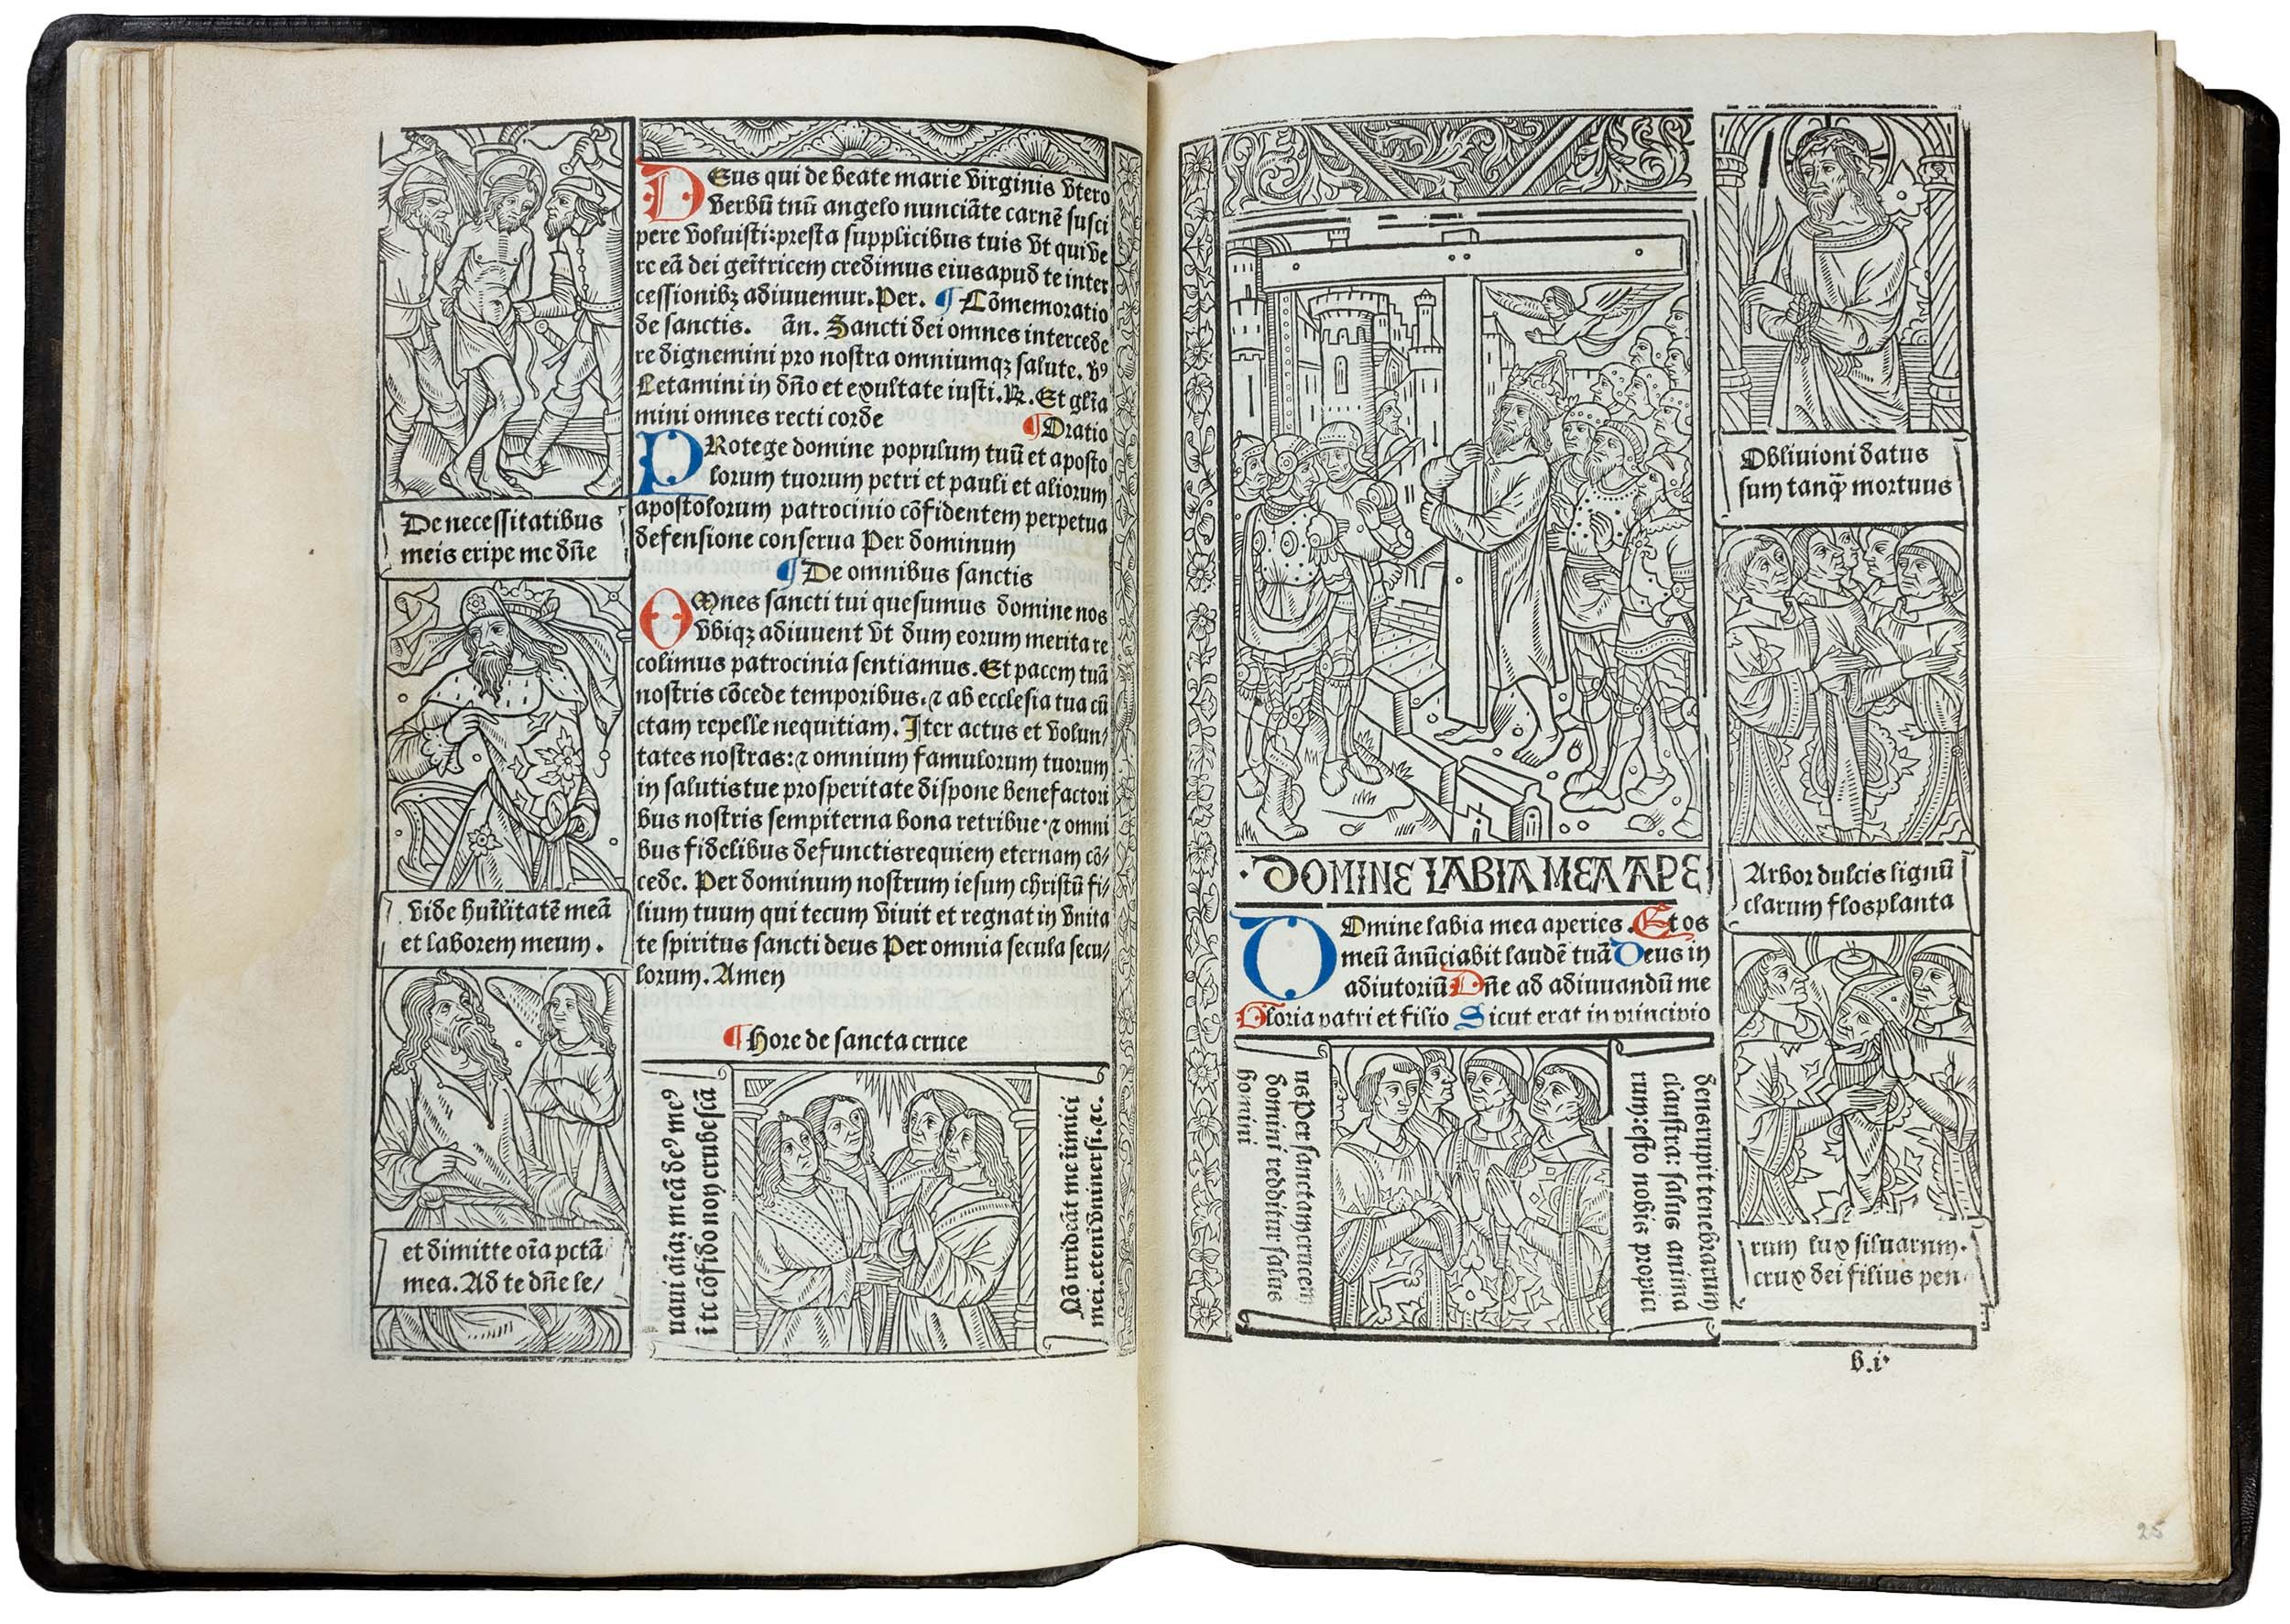 Grandes-heures-royales-verard-1488-1489-printed-book-of-hours-horae-bmv-27.jpg